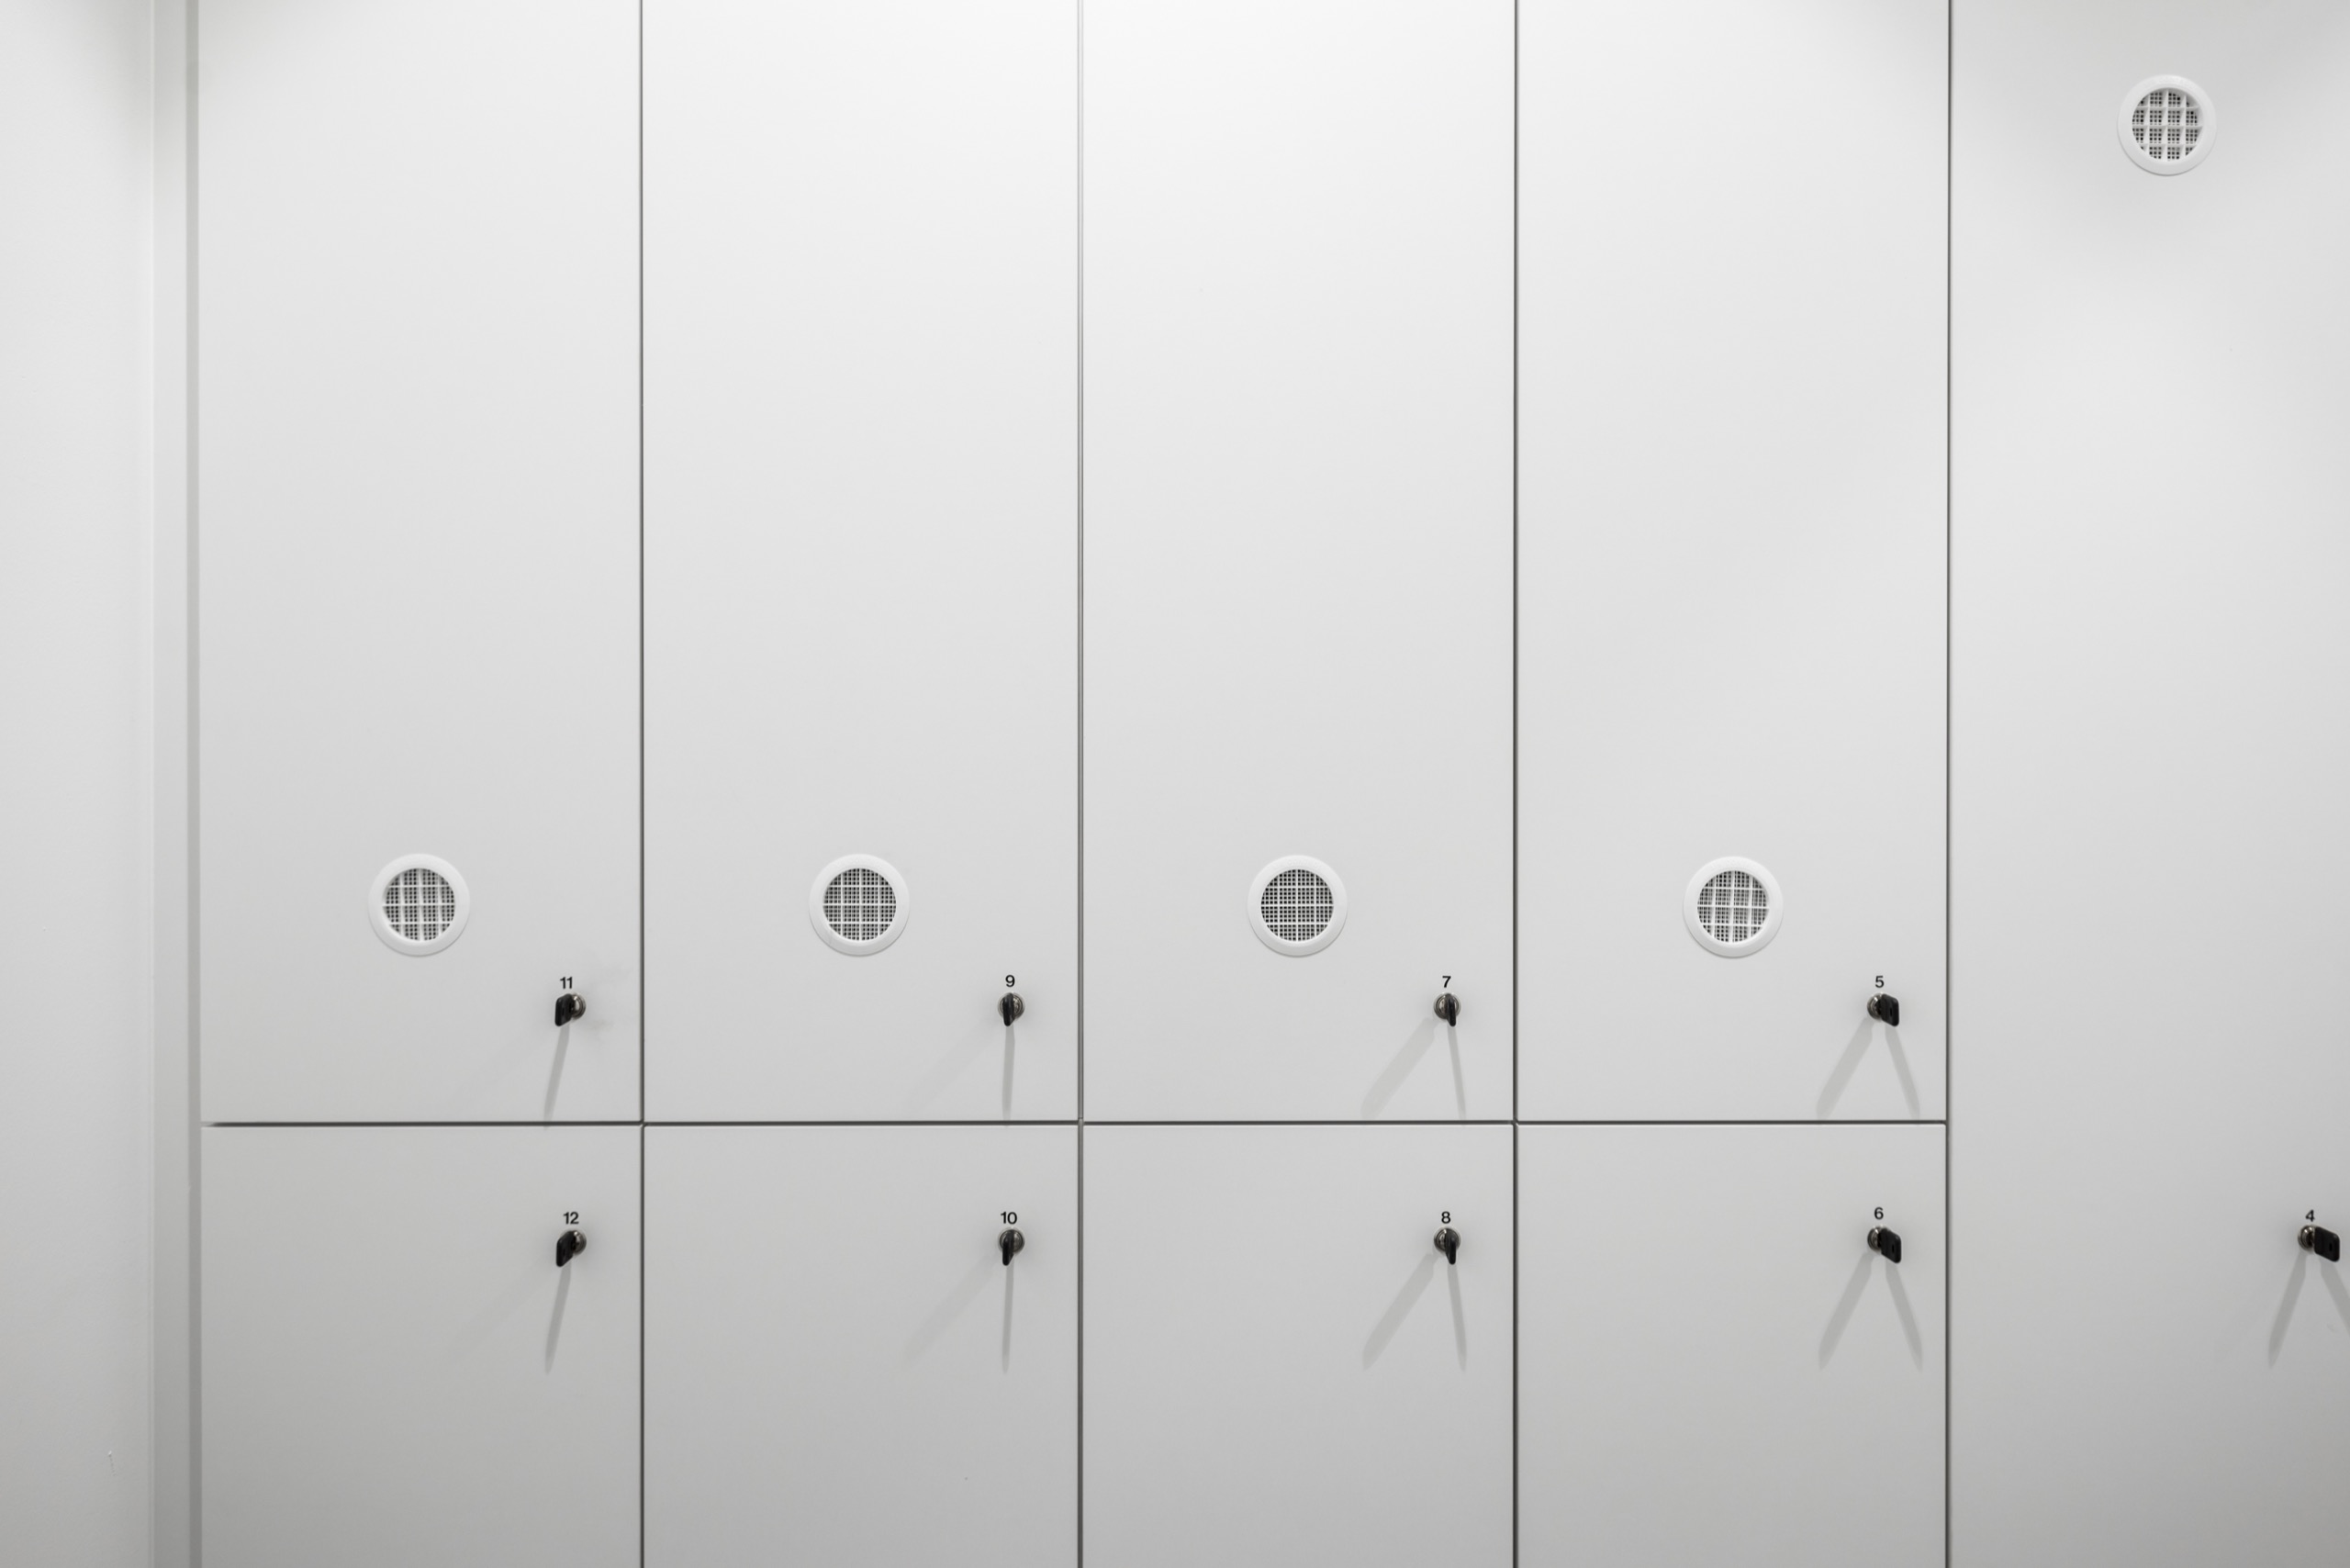 ingelbeensoete_detail lockers